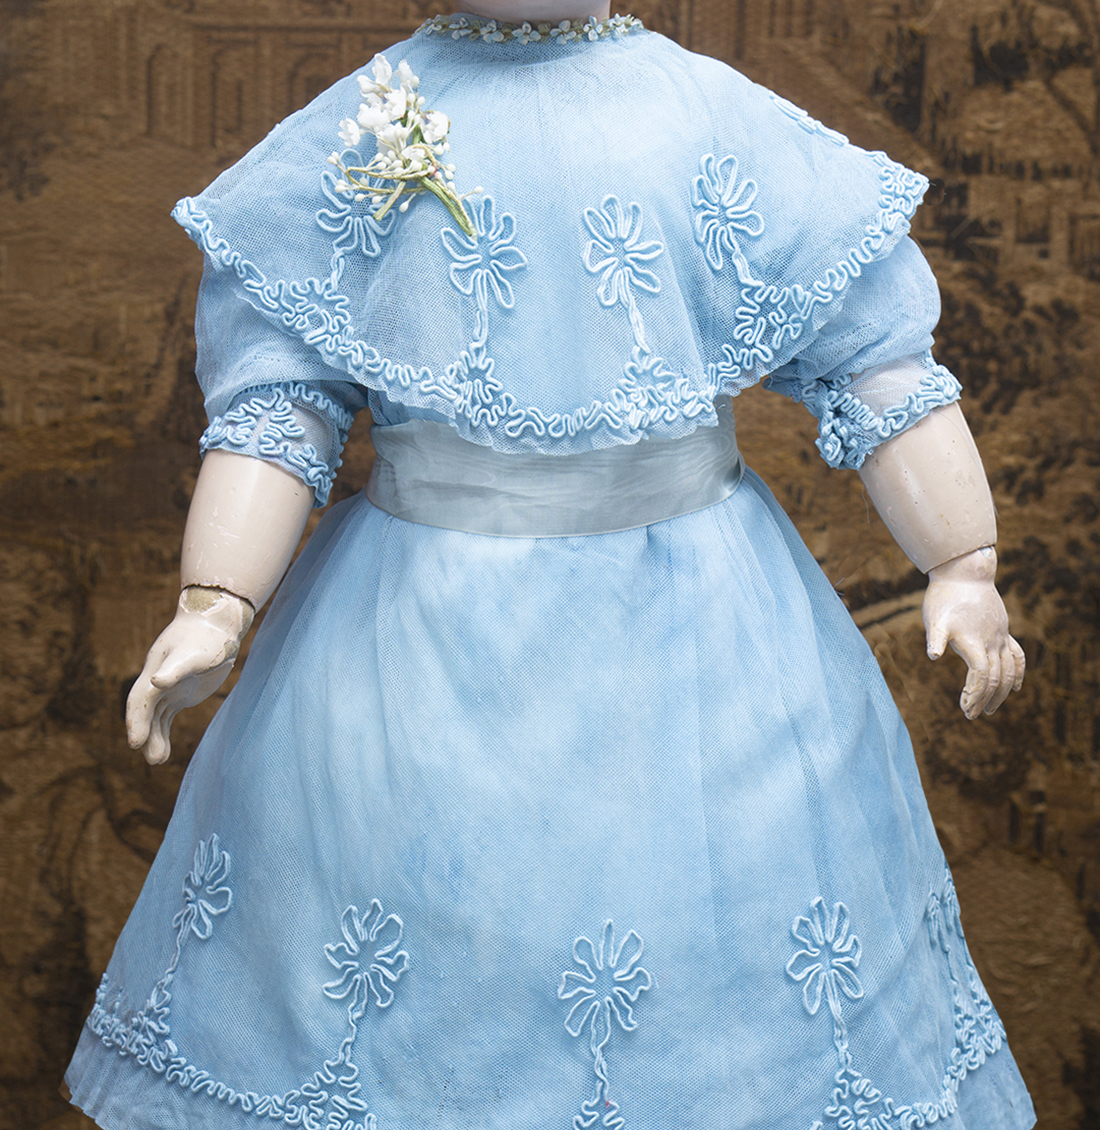 Antique tulle lace dress